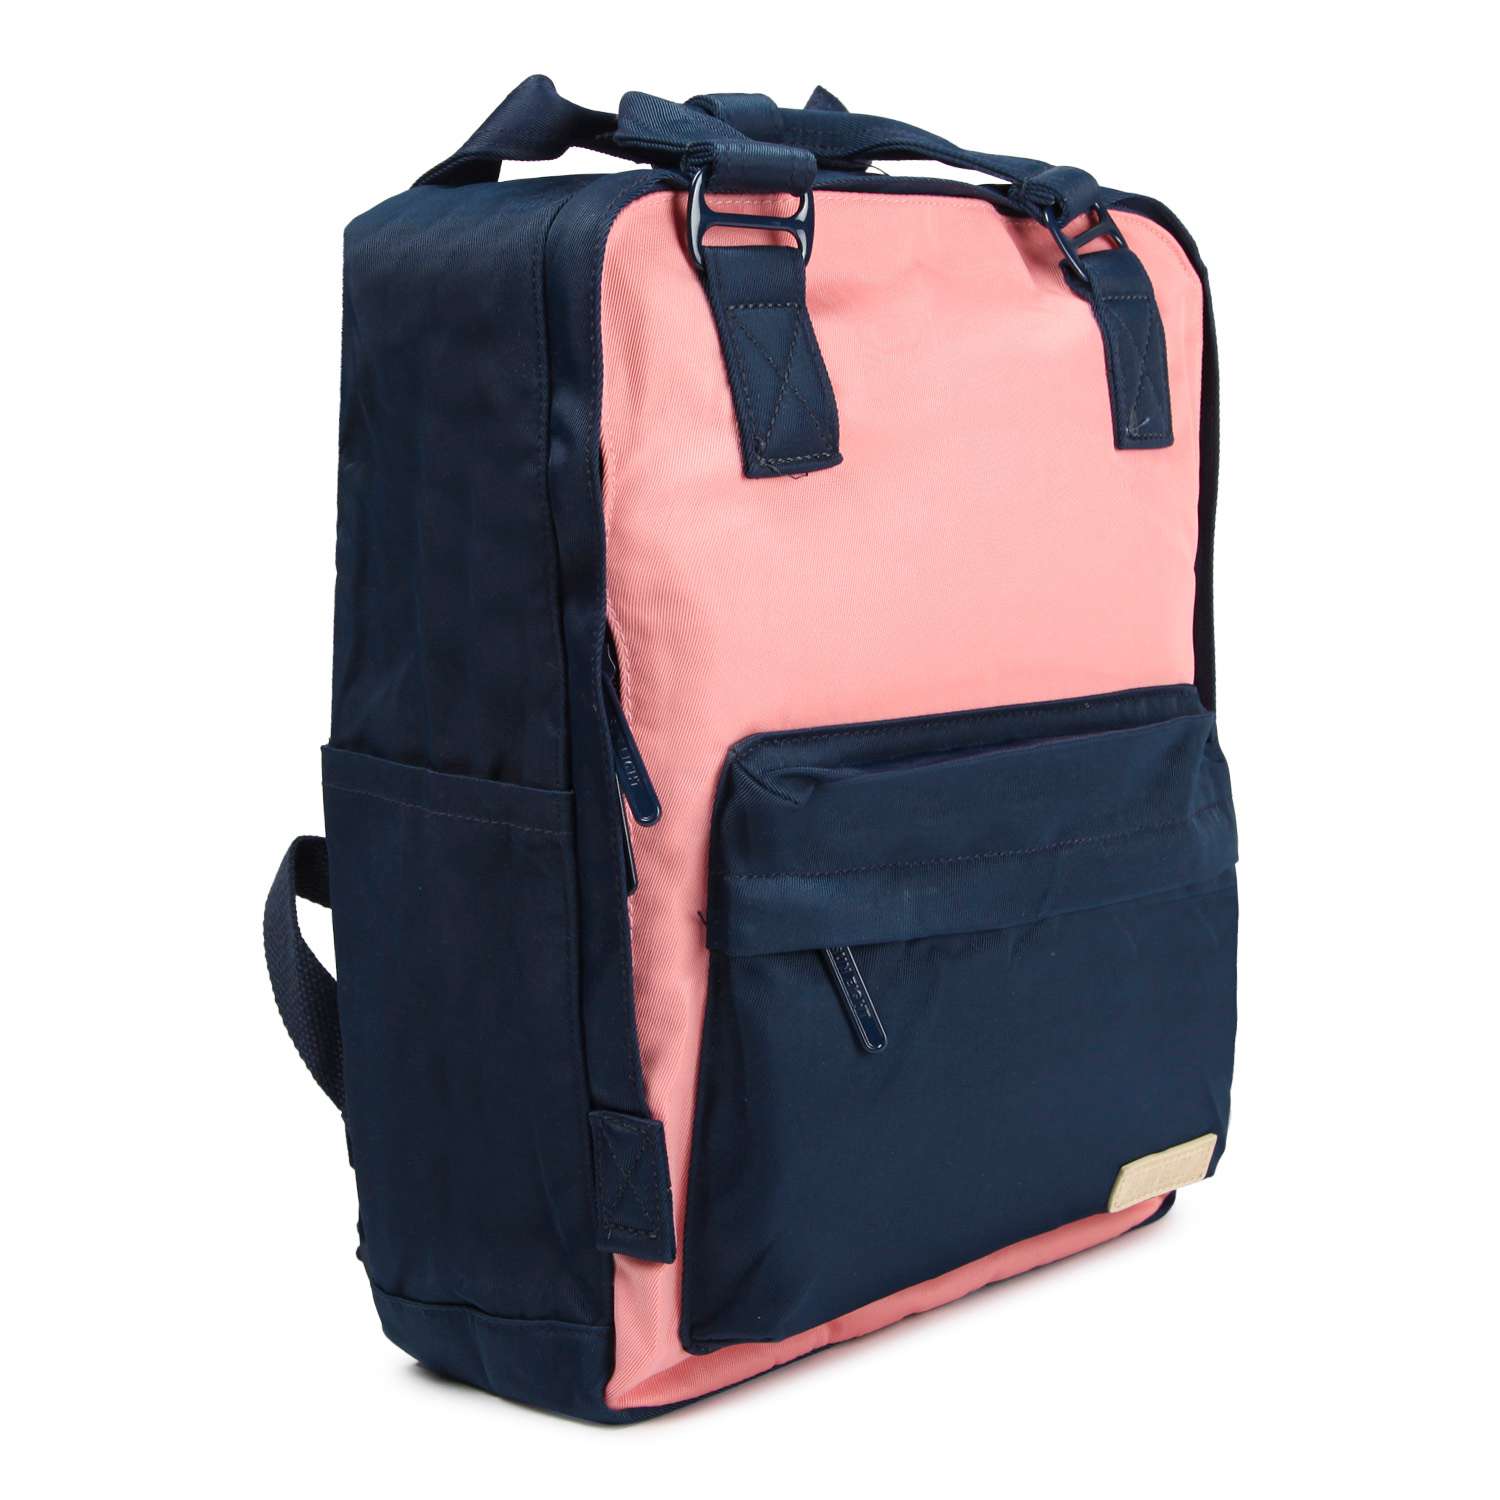 Рюкзак для девочки школьный Suneight SE8350 - фото 2